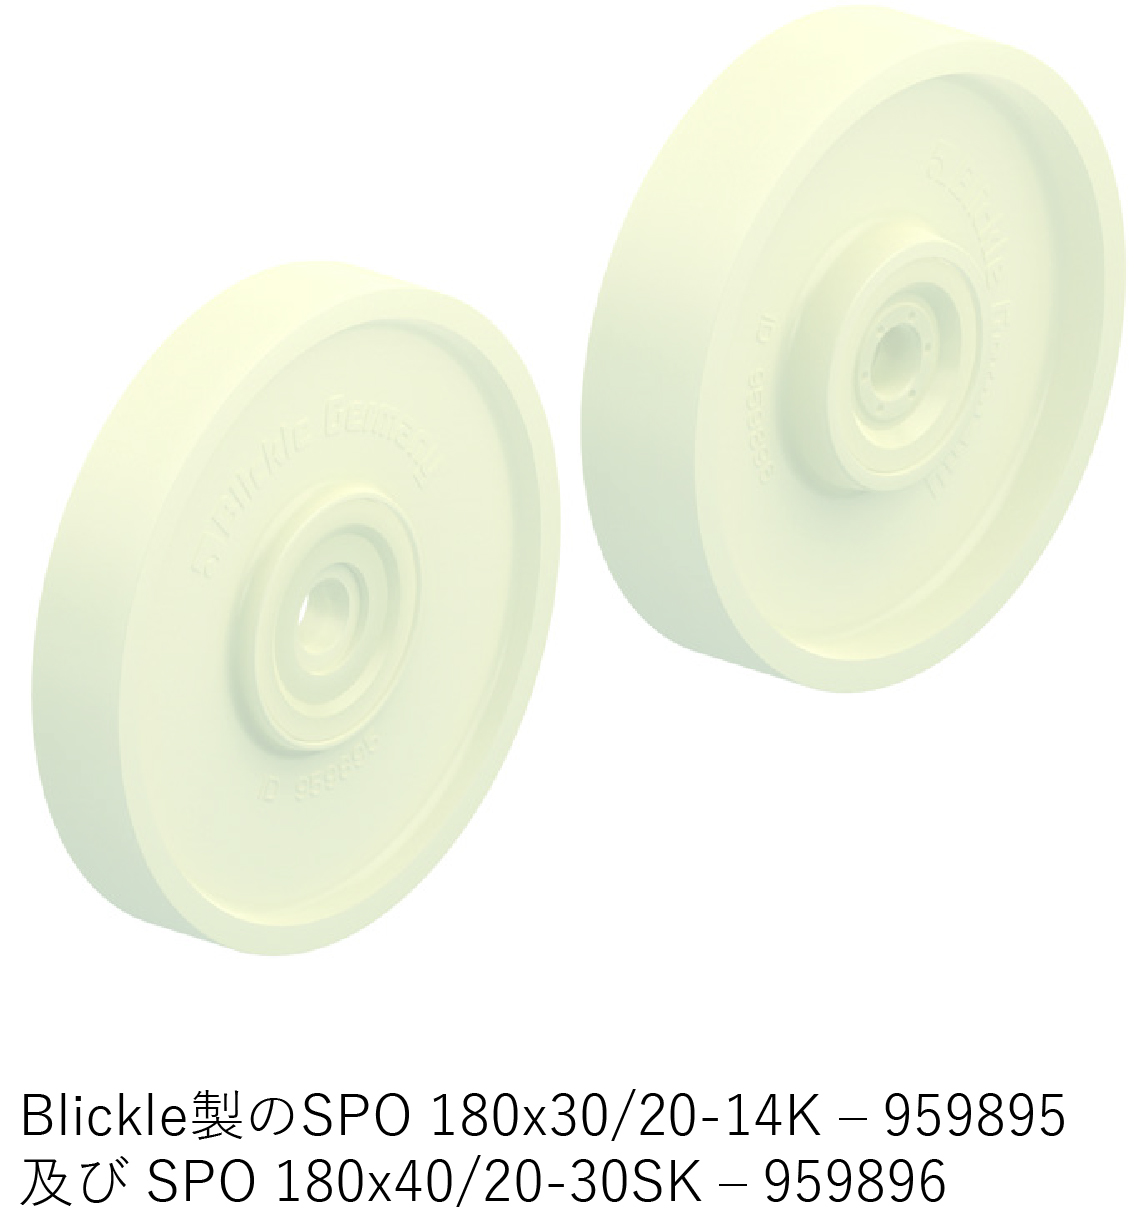 Blickle製のSPO 180x30/20-14K–959895 及び SPO 180x40/20-30SK–959896